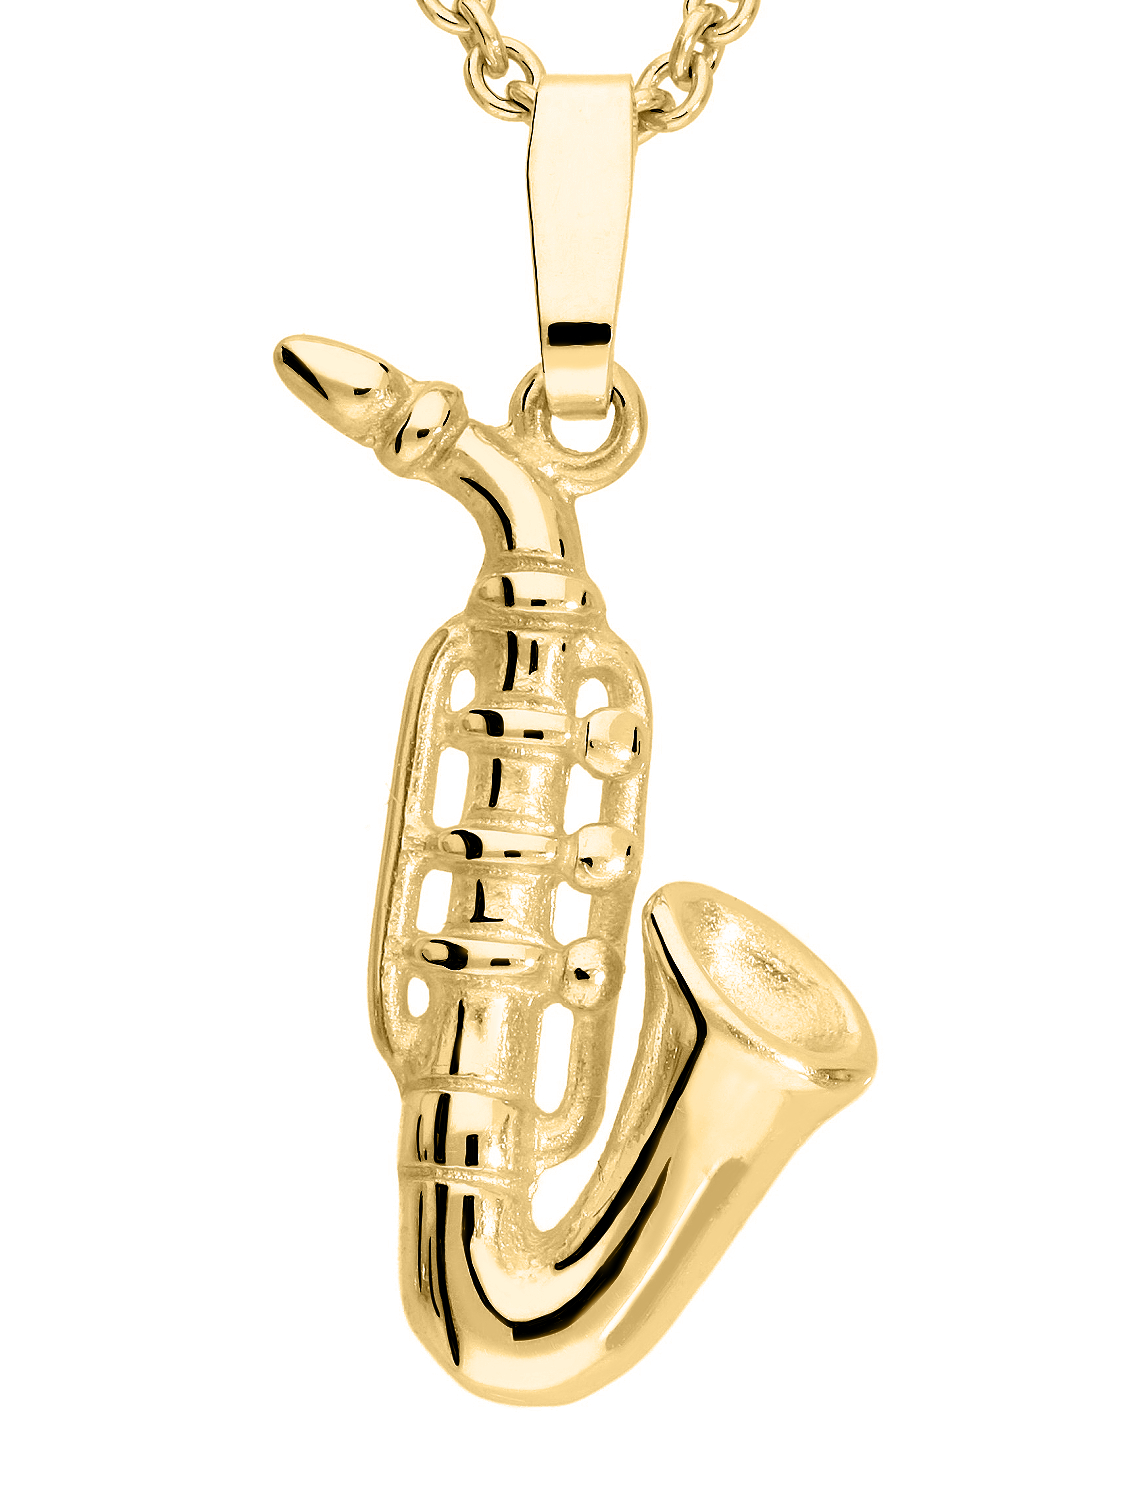 Instrument - Saxophon Motivanhänger 585 Gold